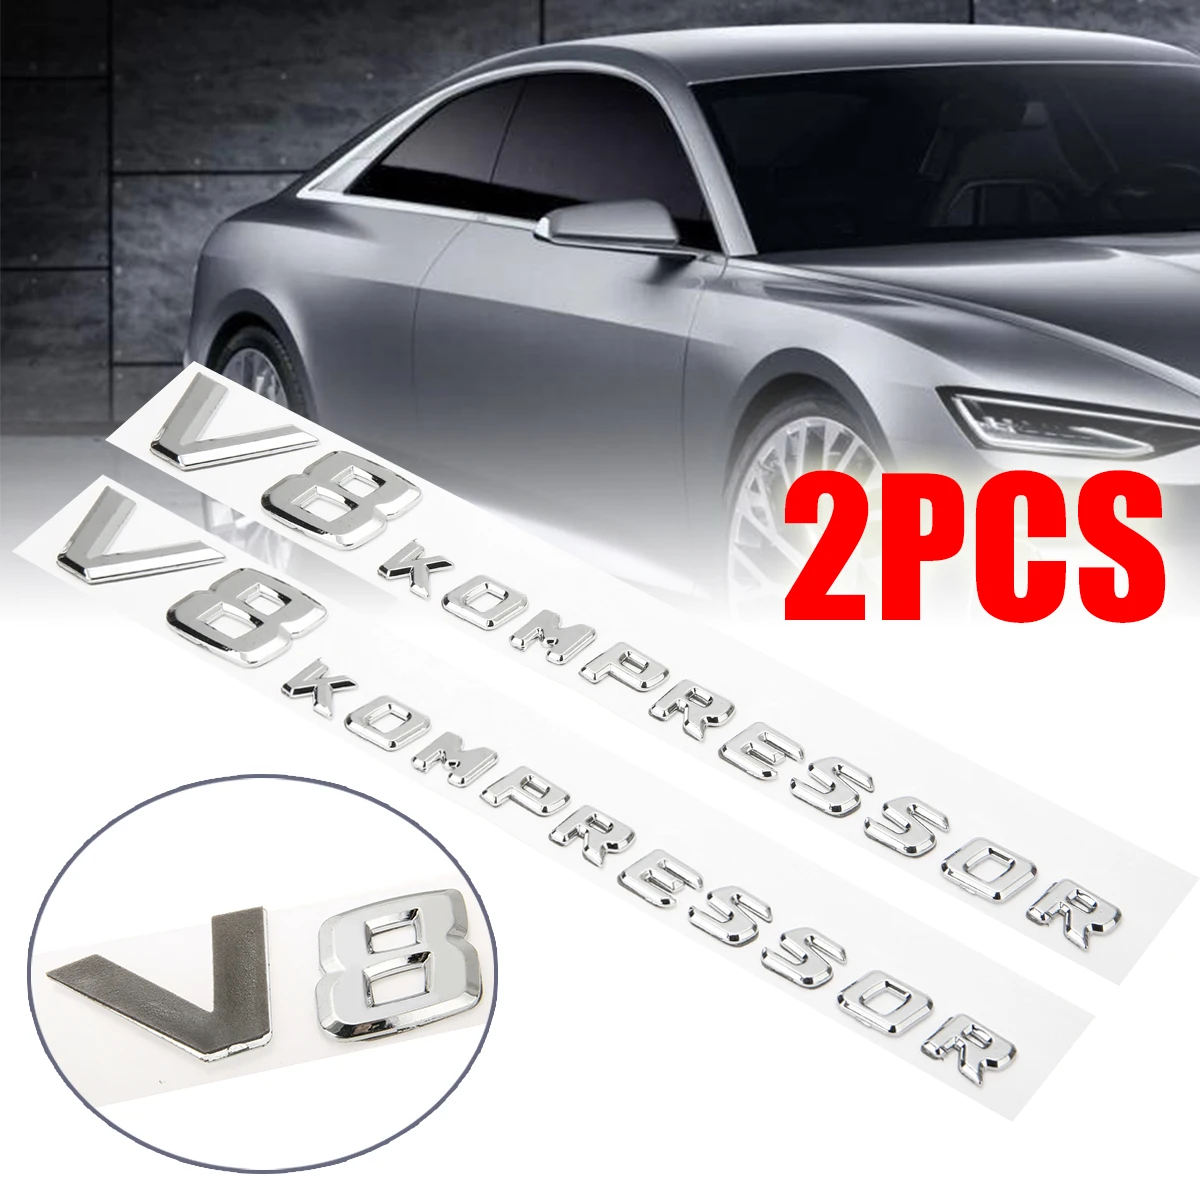 2PCS V8 Kompressor Auto Letter Emblem Badge Chrome Side Fender Sticker 3D Design For Mercedes